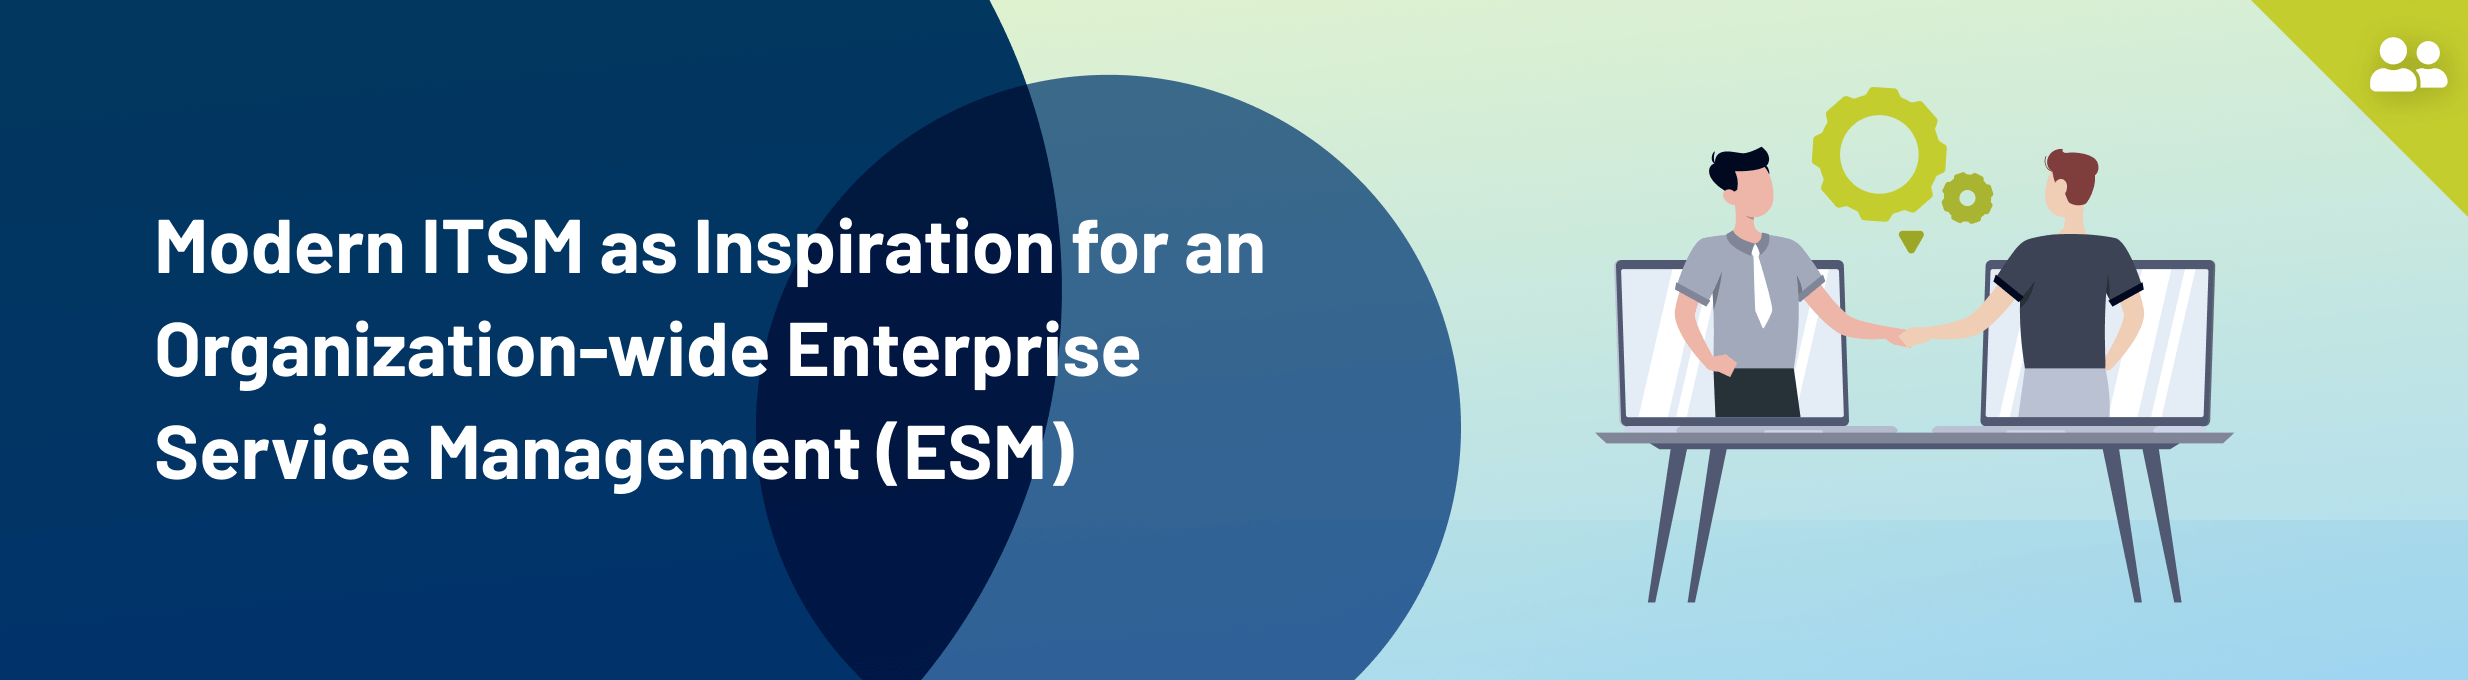 Modern ITSM as inspiration for organization-wide Enterprise Service Management (ESM) - banner